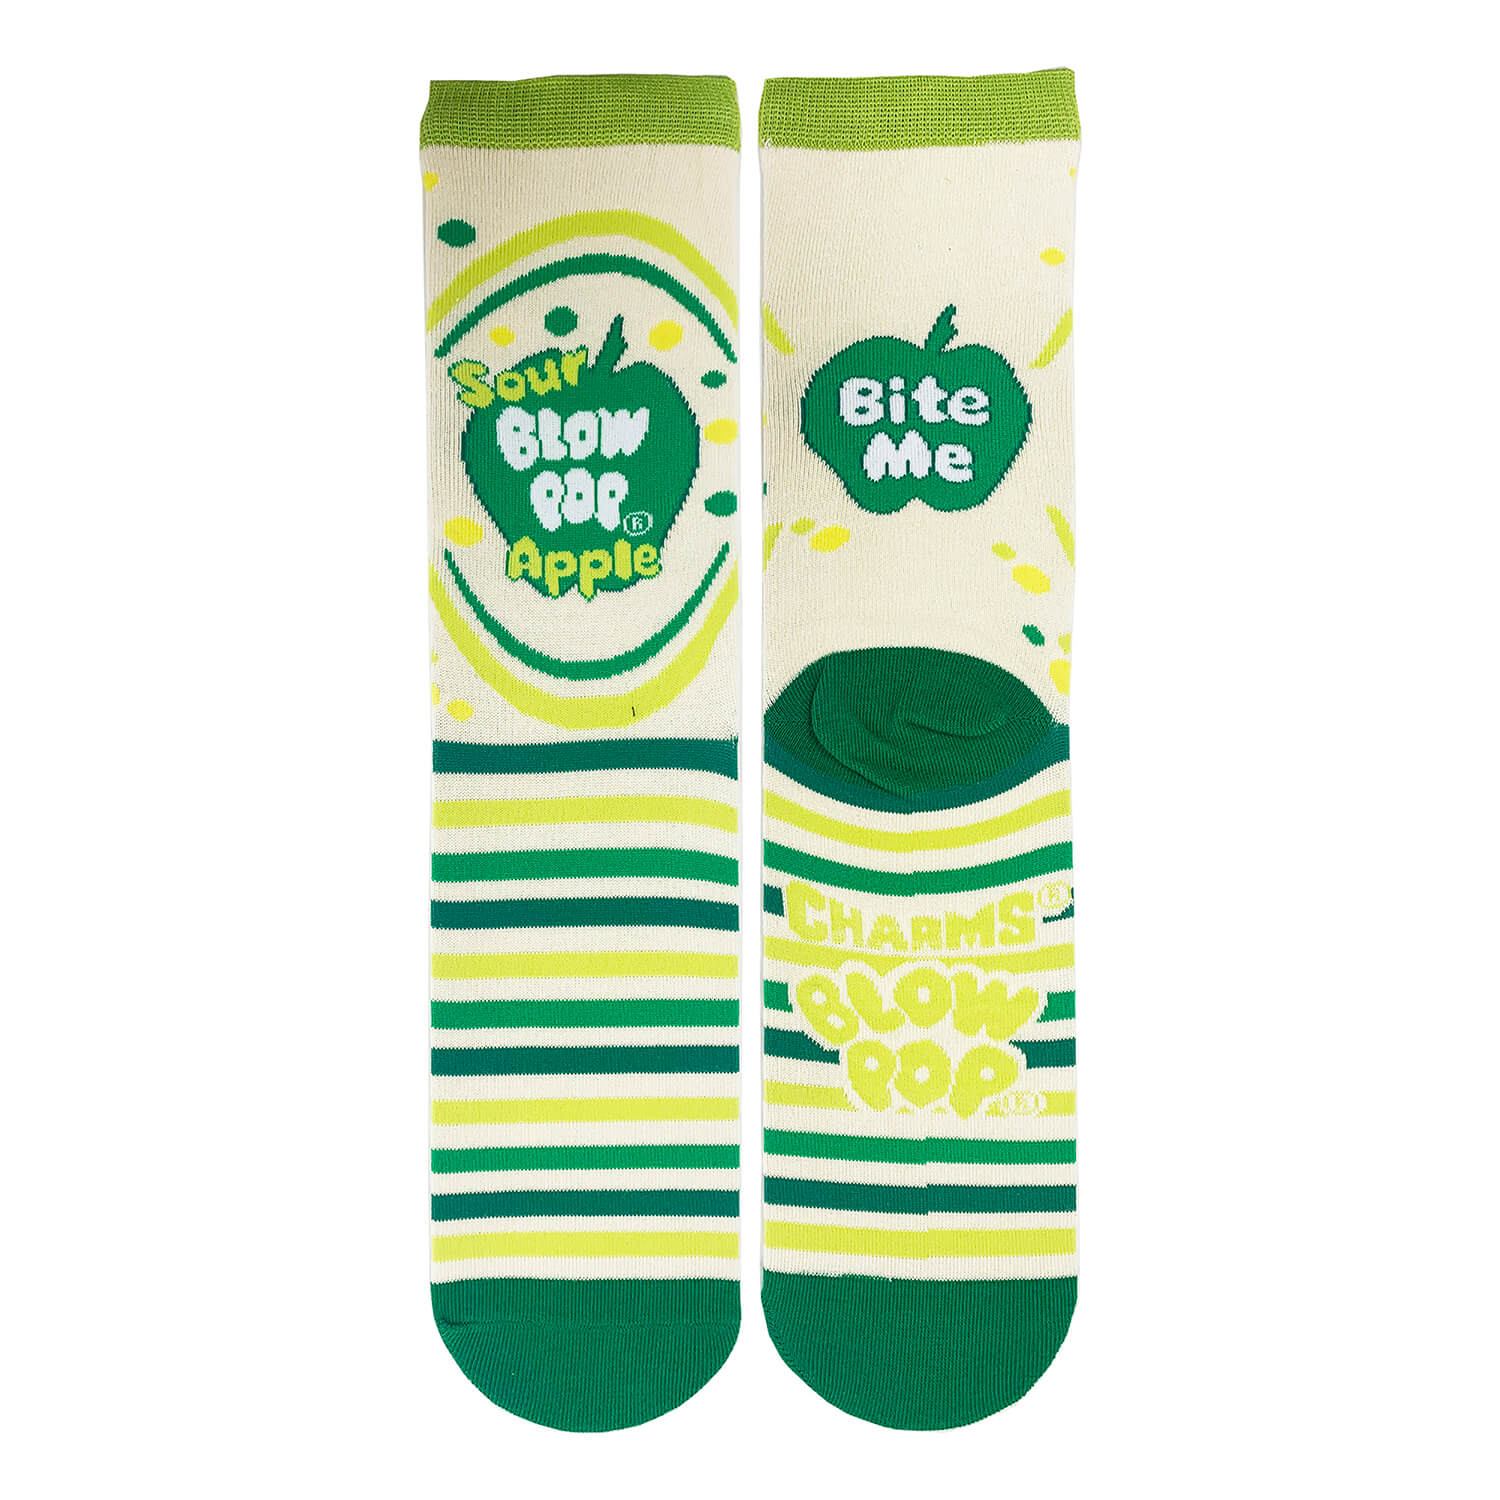 Sour Apple Pop Socks | Novelty Crew Socks For Womens